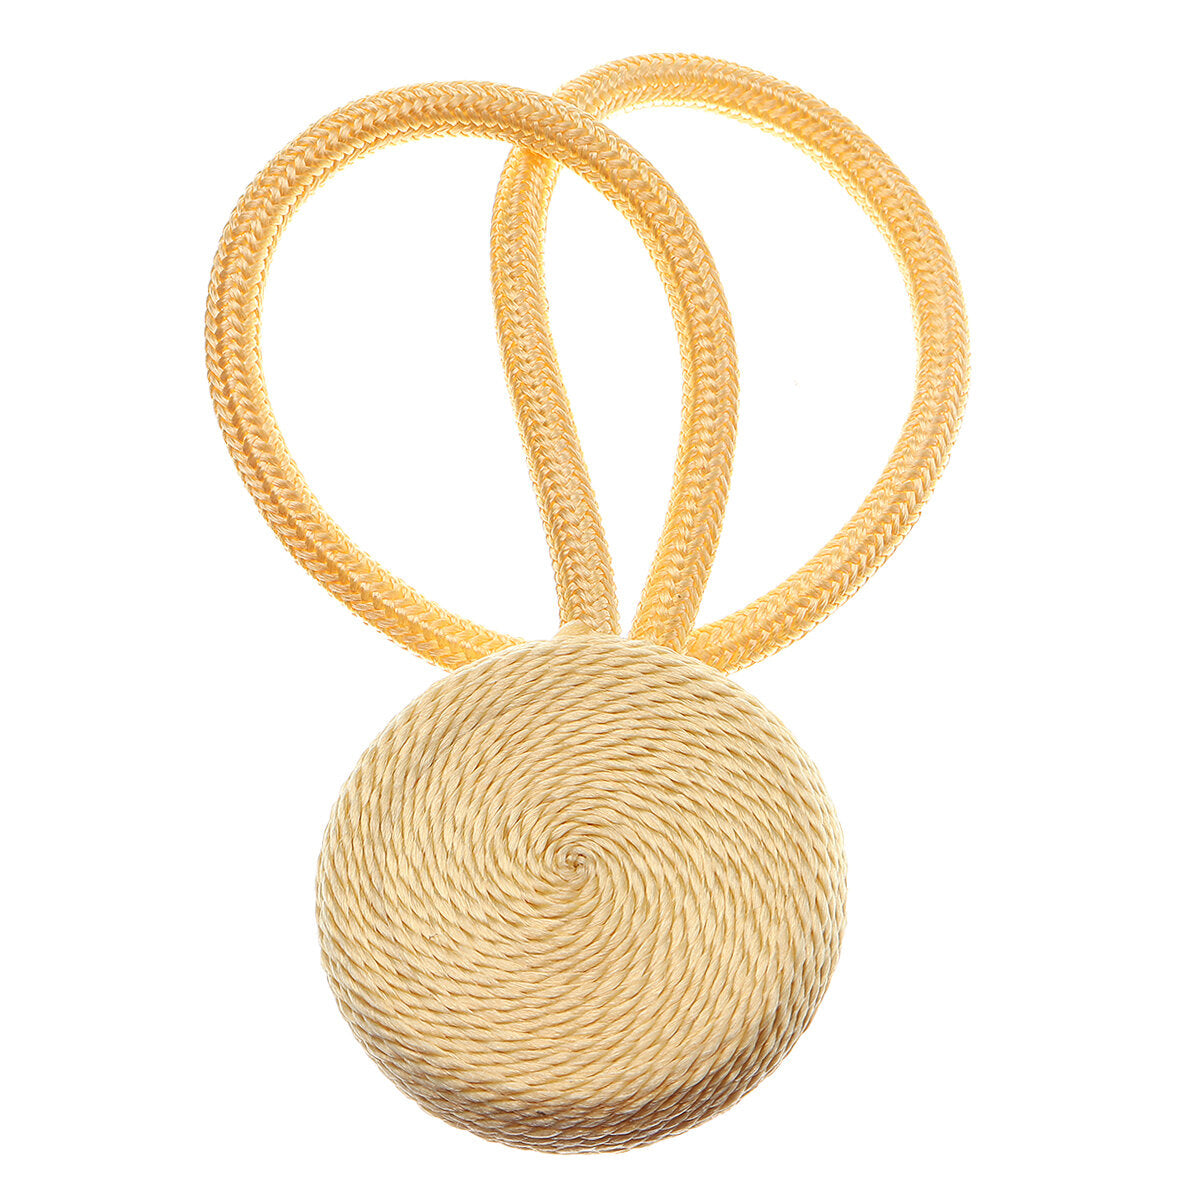 2 stuks magnetische bal gordijn gesp houder tieback tie backs clips: